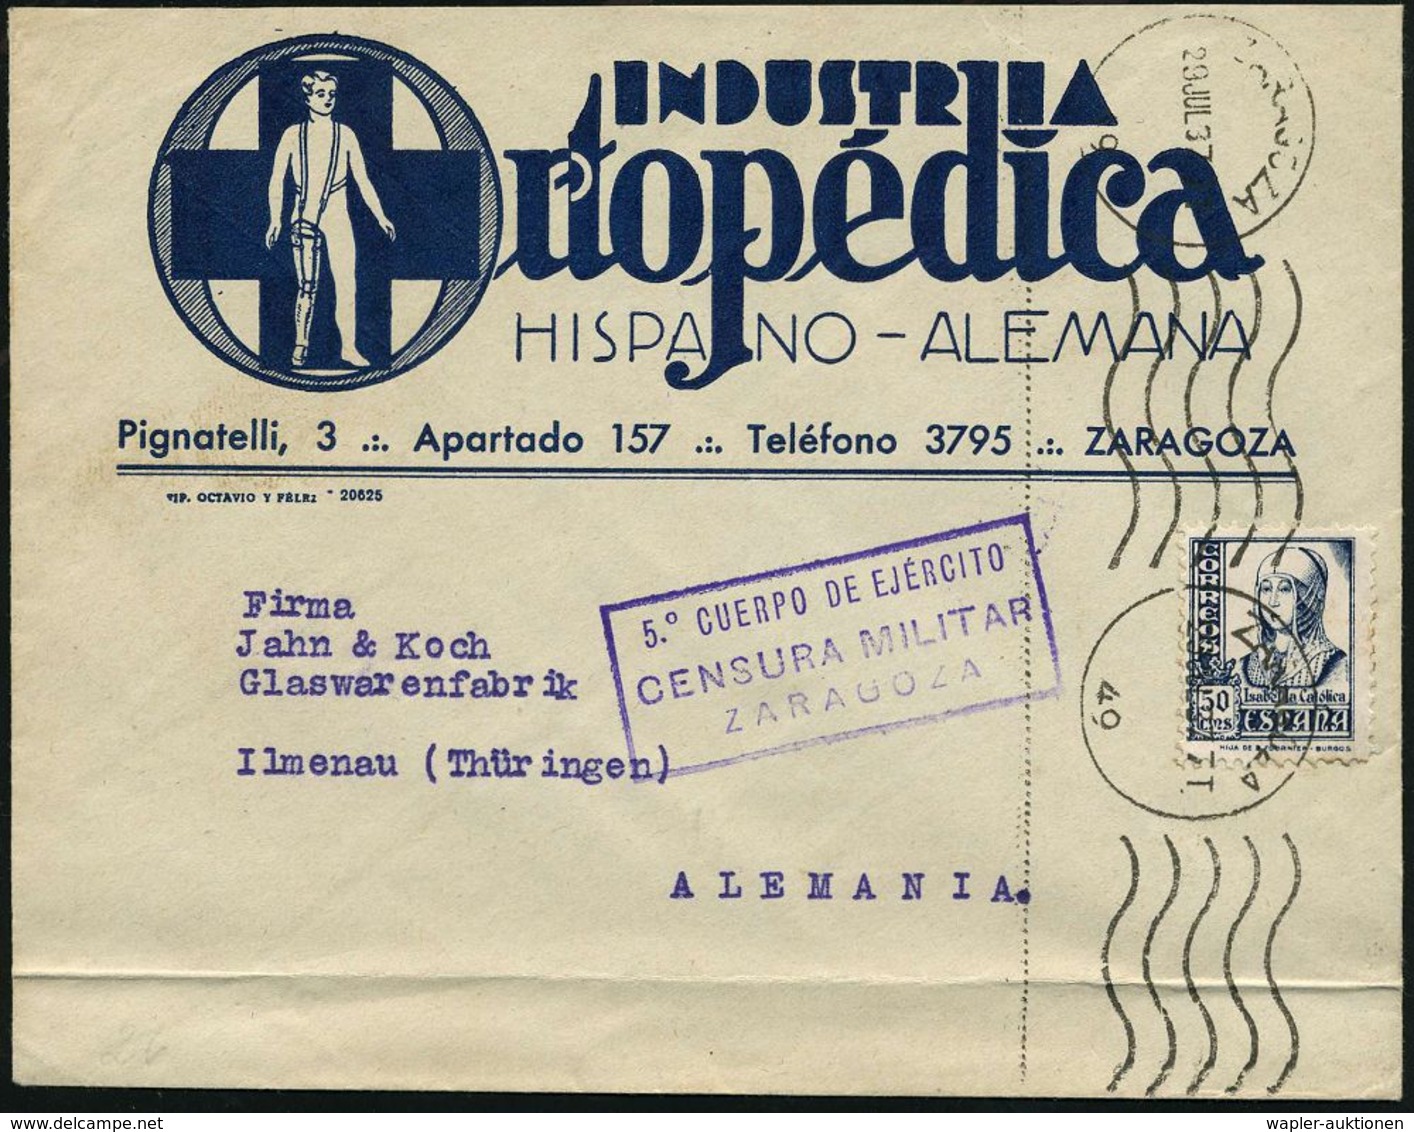 BEHINDERTE / REHABILITATION : SPANIEN 1937 (29.7.) Reklame-Bf.: INDUSTRIA/Ortopedica/HISPANO-ALEMANA (blaues Kreuz, Mann - Medizin